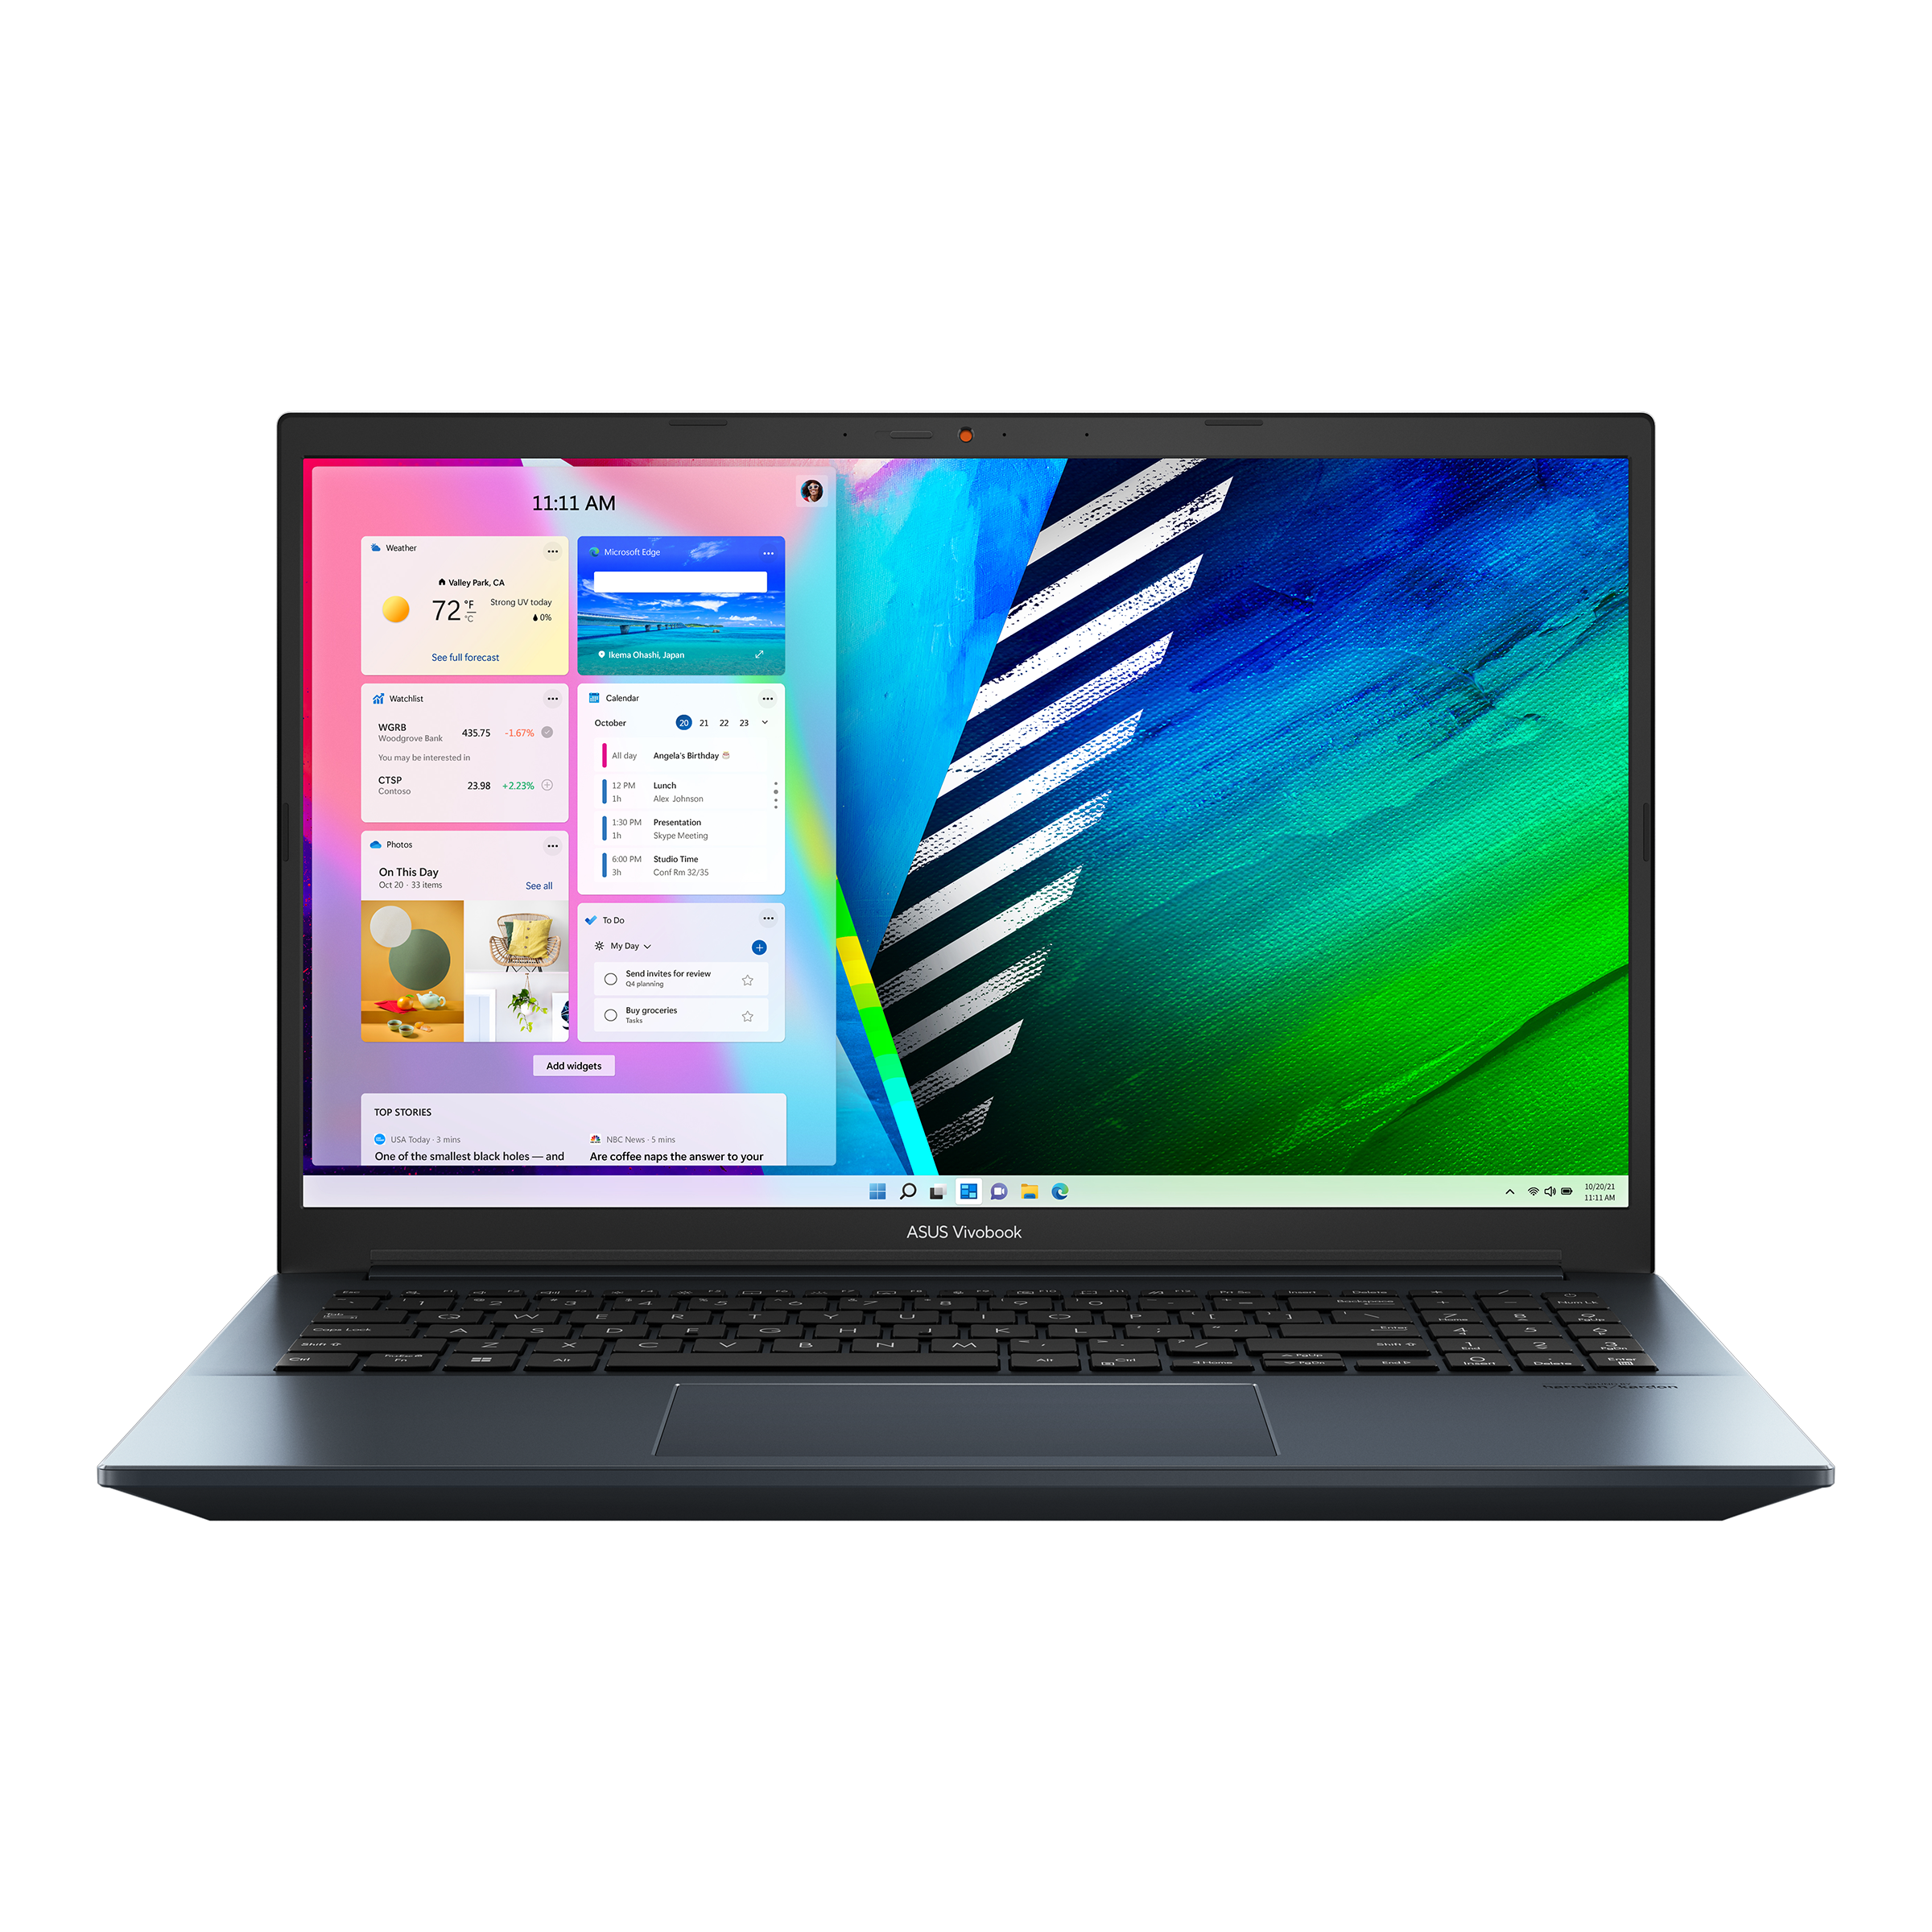 Vivobook Pro 15 OLED (K3500, 11th Gen Intel)